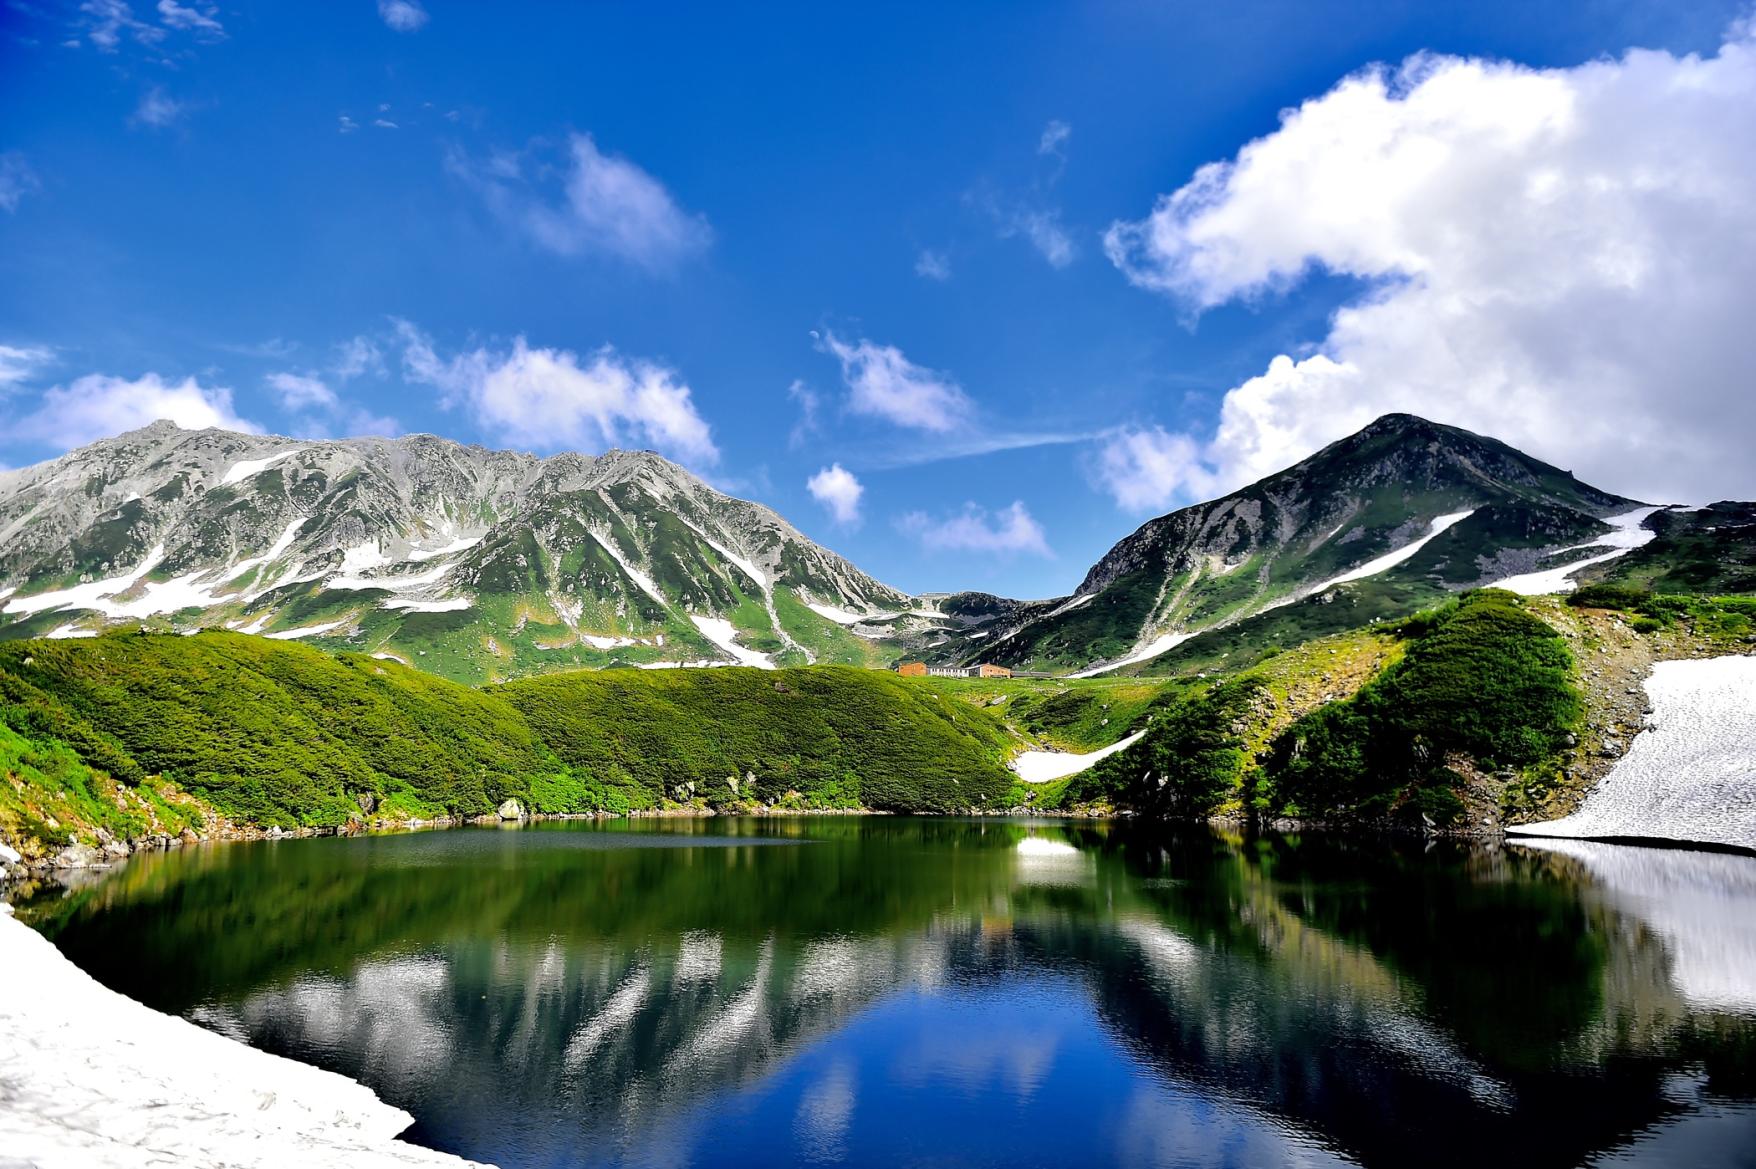 เส้นทางแอลป์ทาเตยามะคุโรเบะ: การเดินทางข้ามเทือกเขาแอลป์ญี่ปุ่นตอนเหนือที่น่าตื่นตาตื่นใจ-1